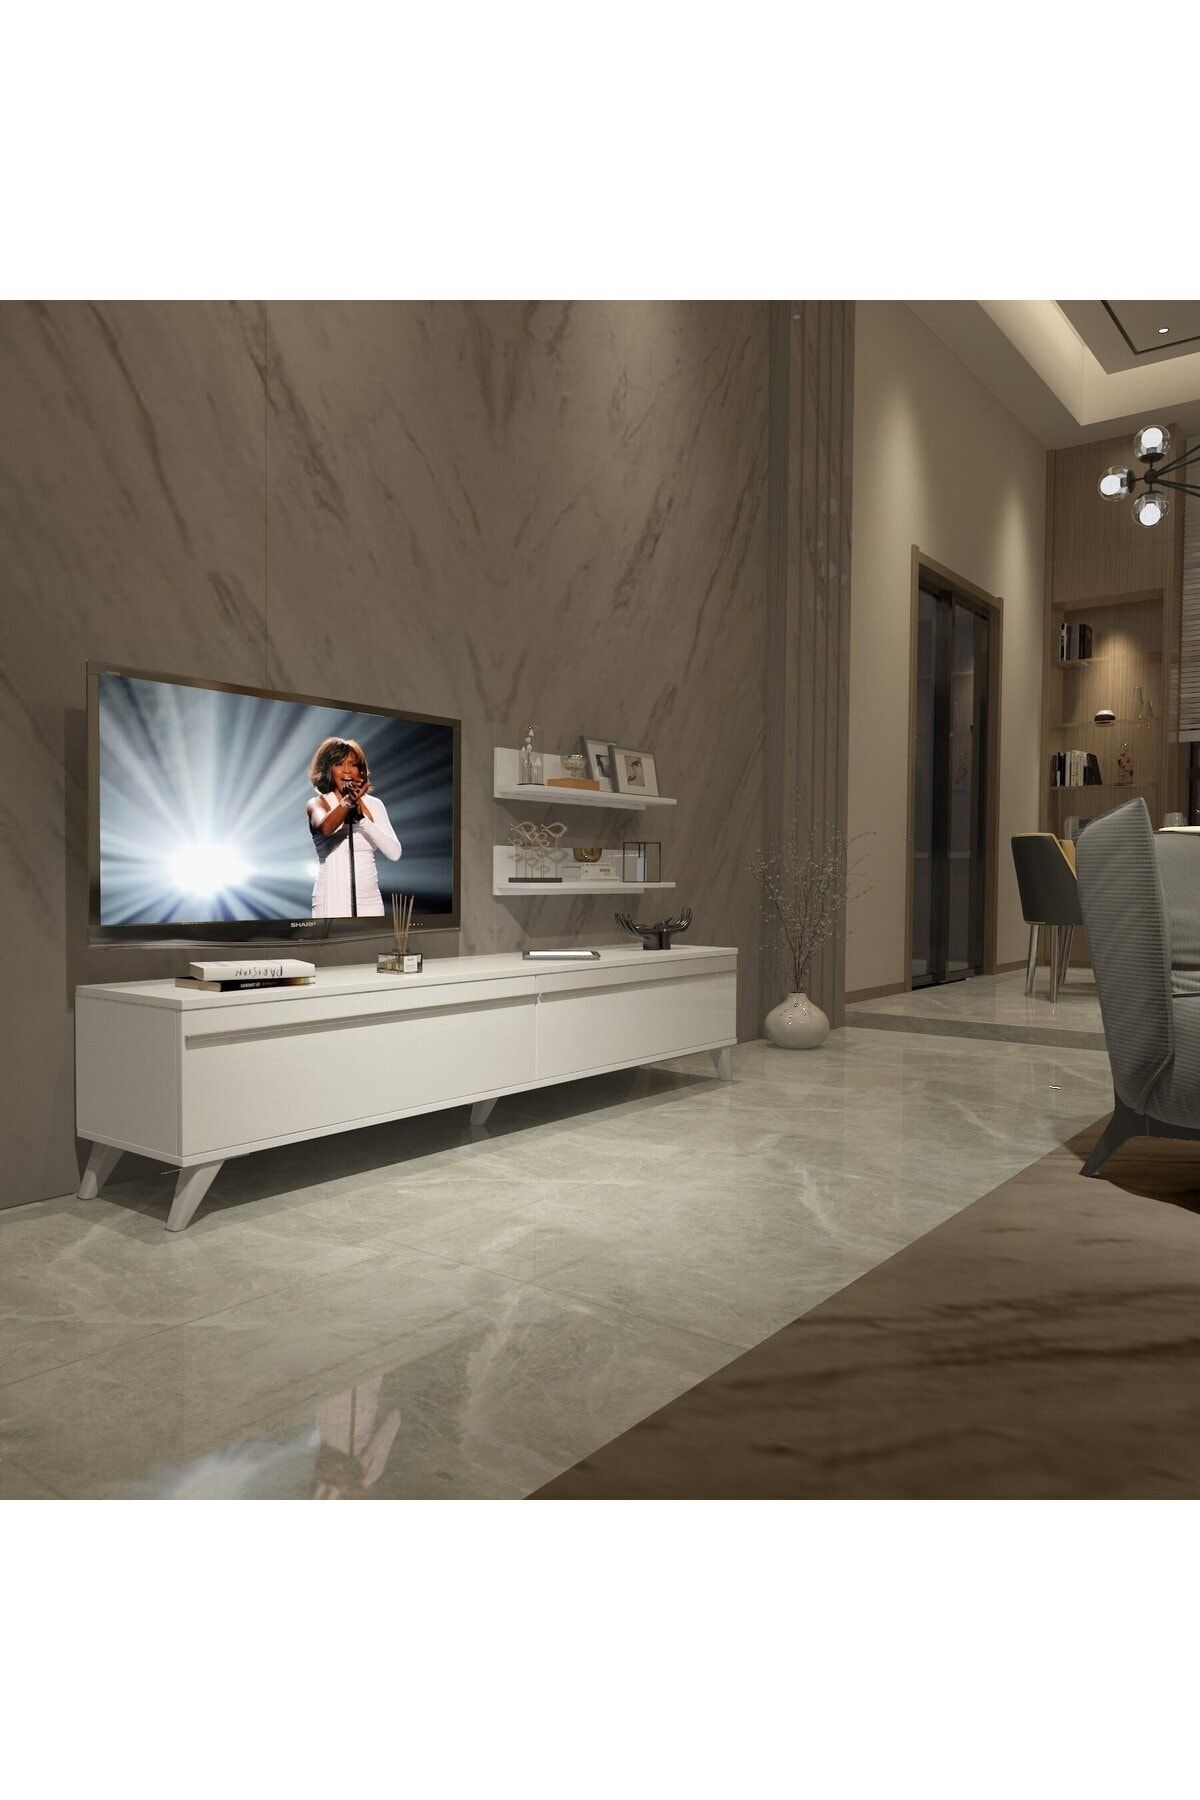 Decoraktiv Eko 4 Mdf Std Retro Tv Ünitesi Tv Sehpası - Parlak Beyaz